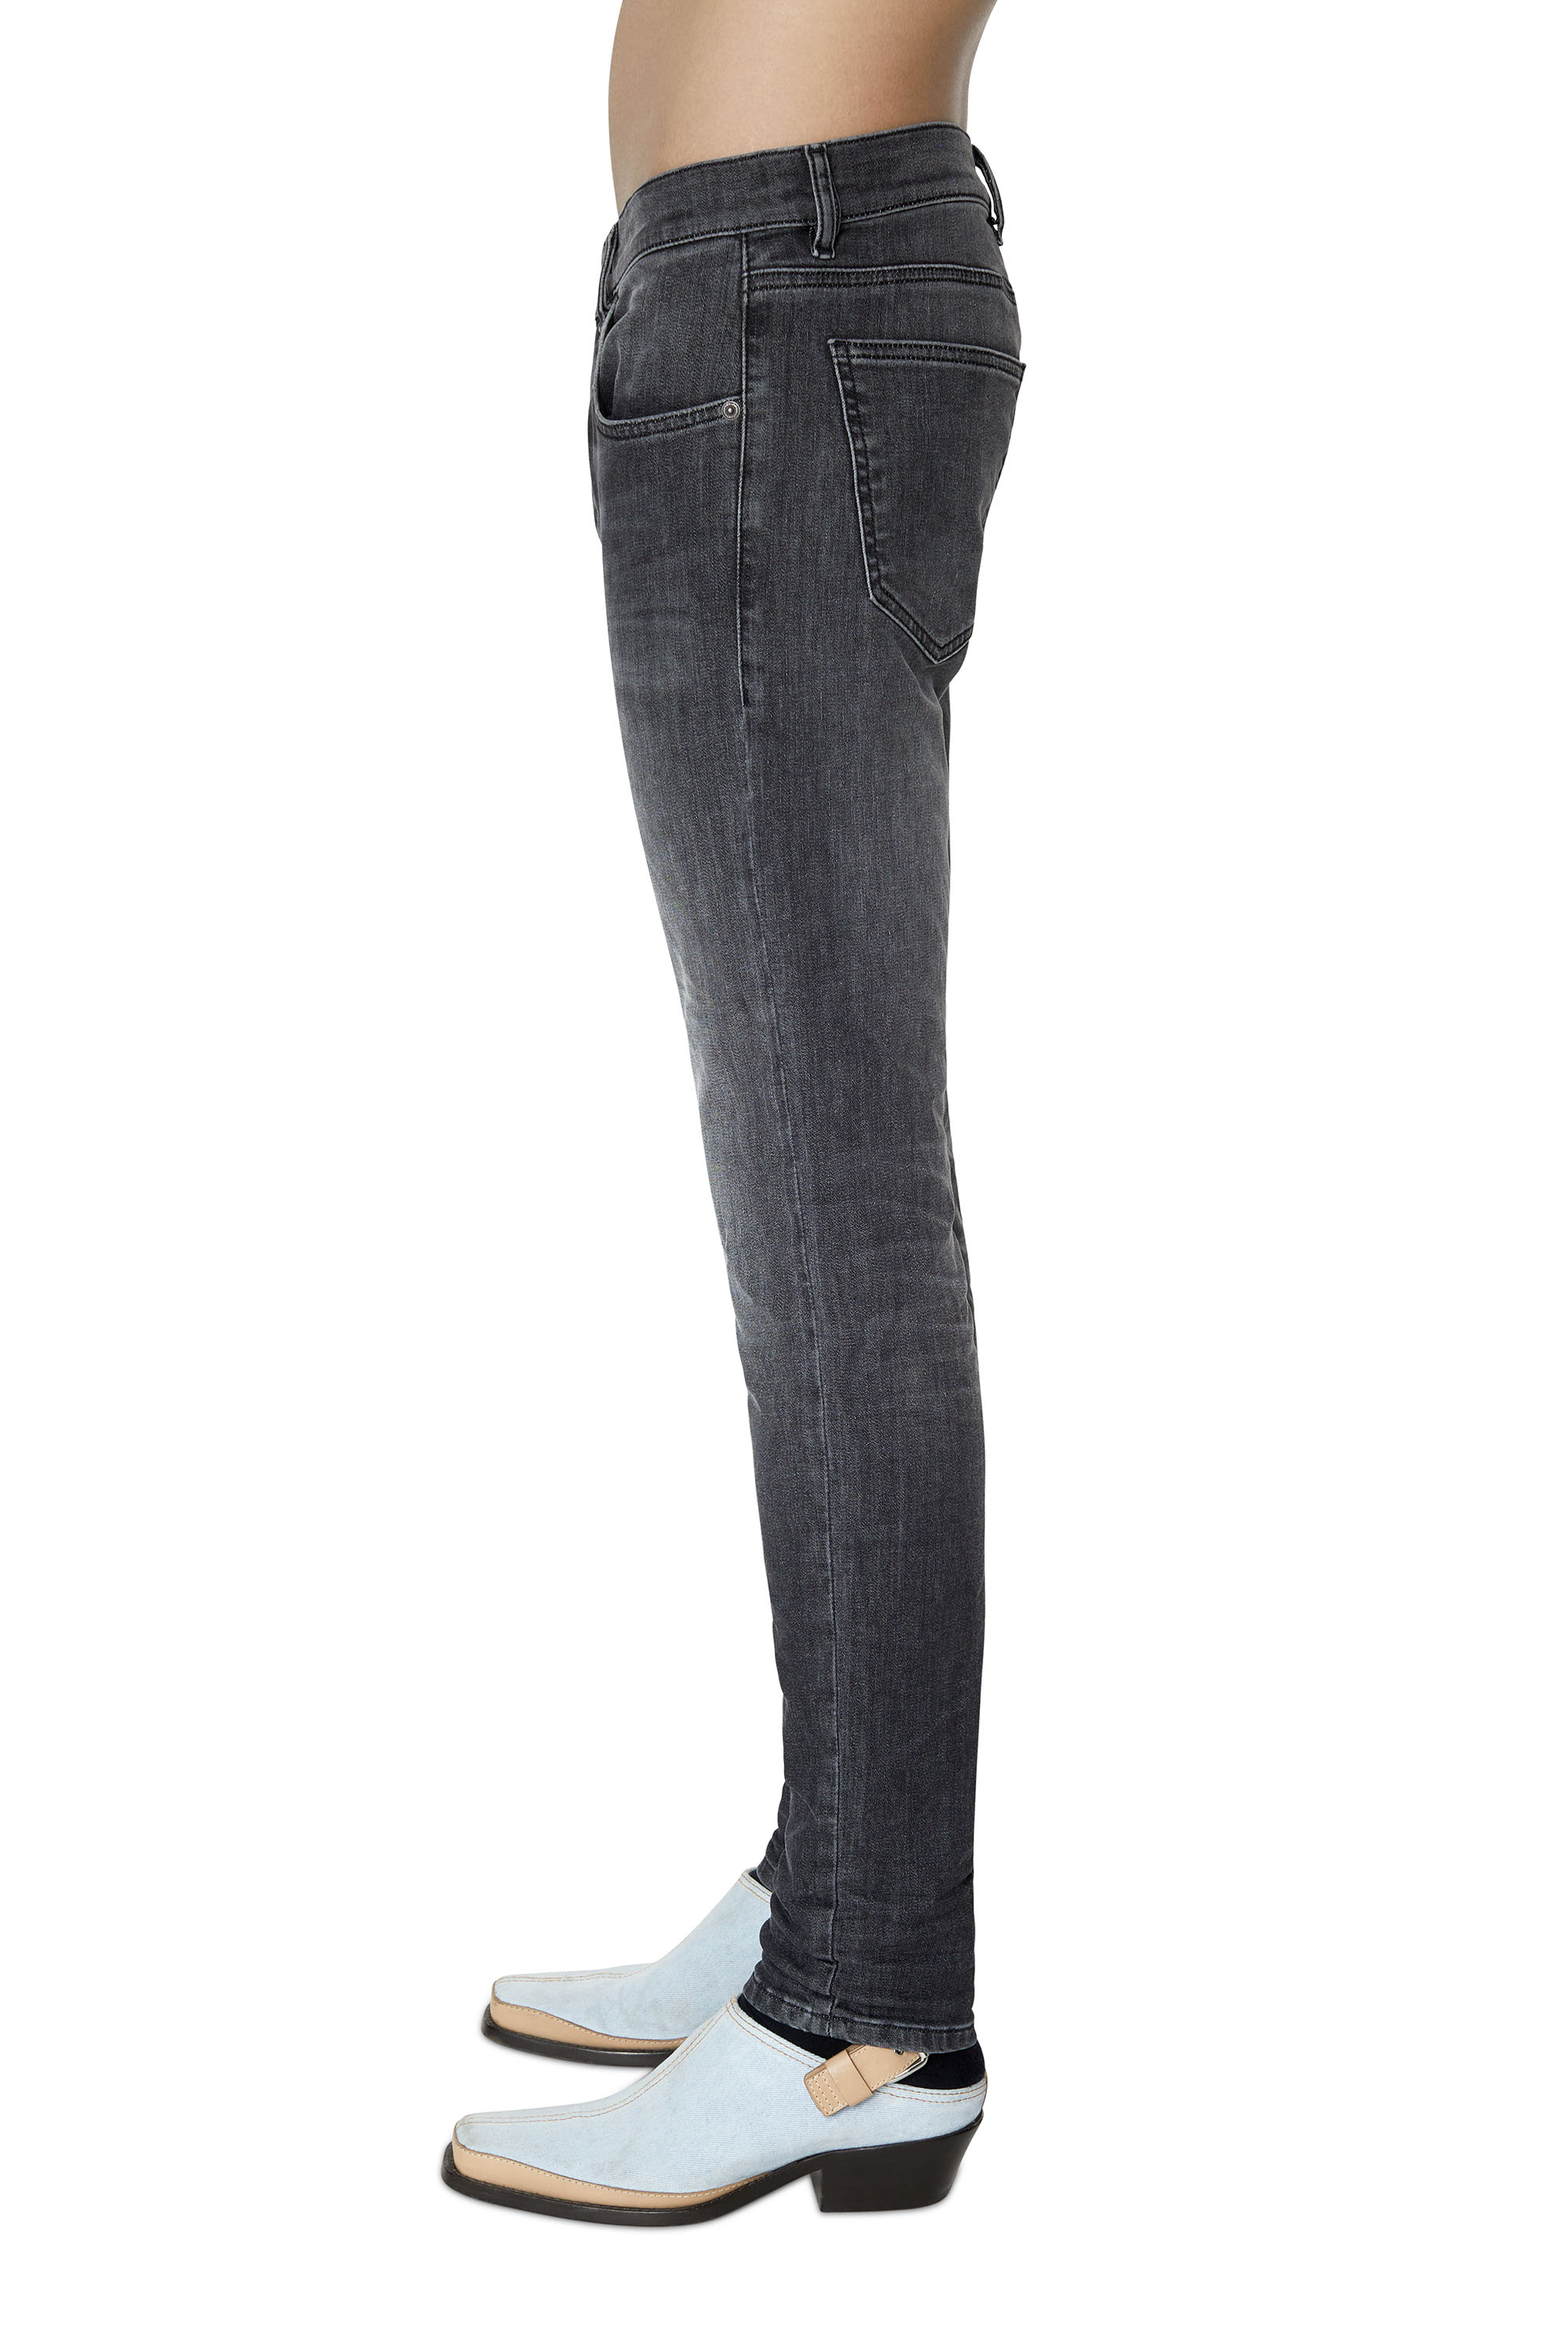 Diesel - D-Strukt JoggJeans® 09D52 Slim, Negro/Gris oscuro - Image 4